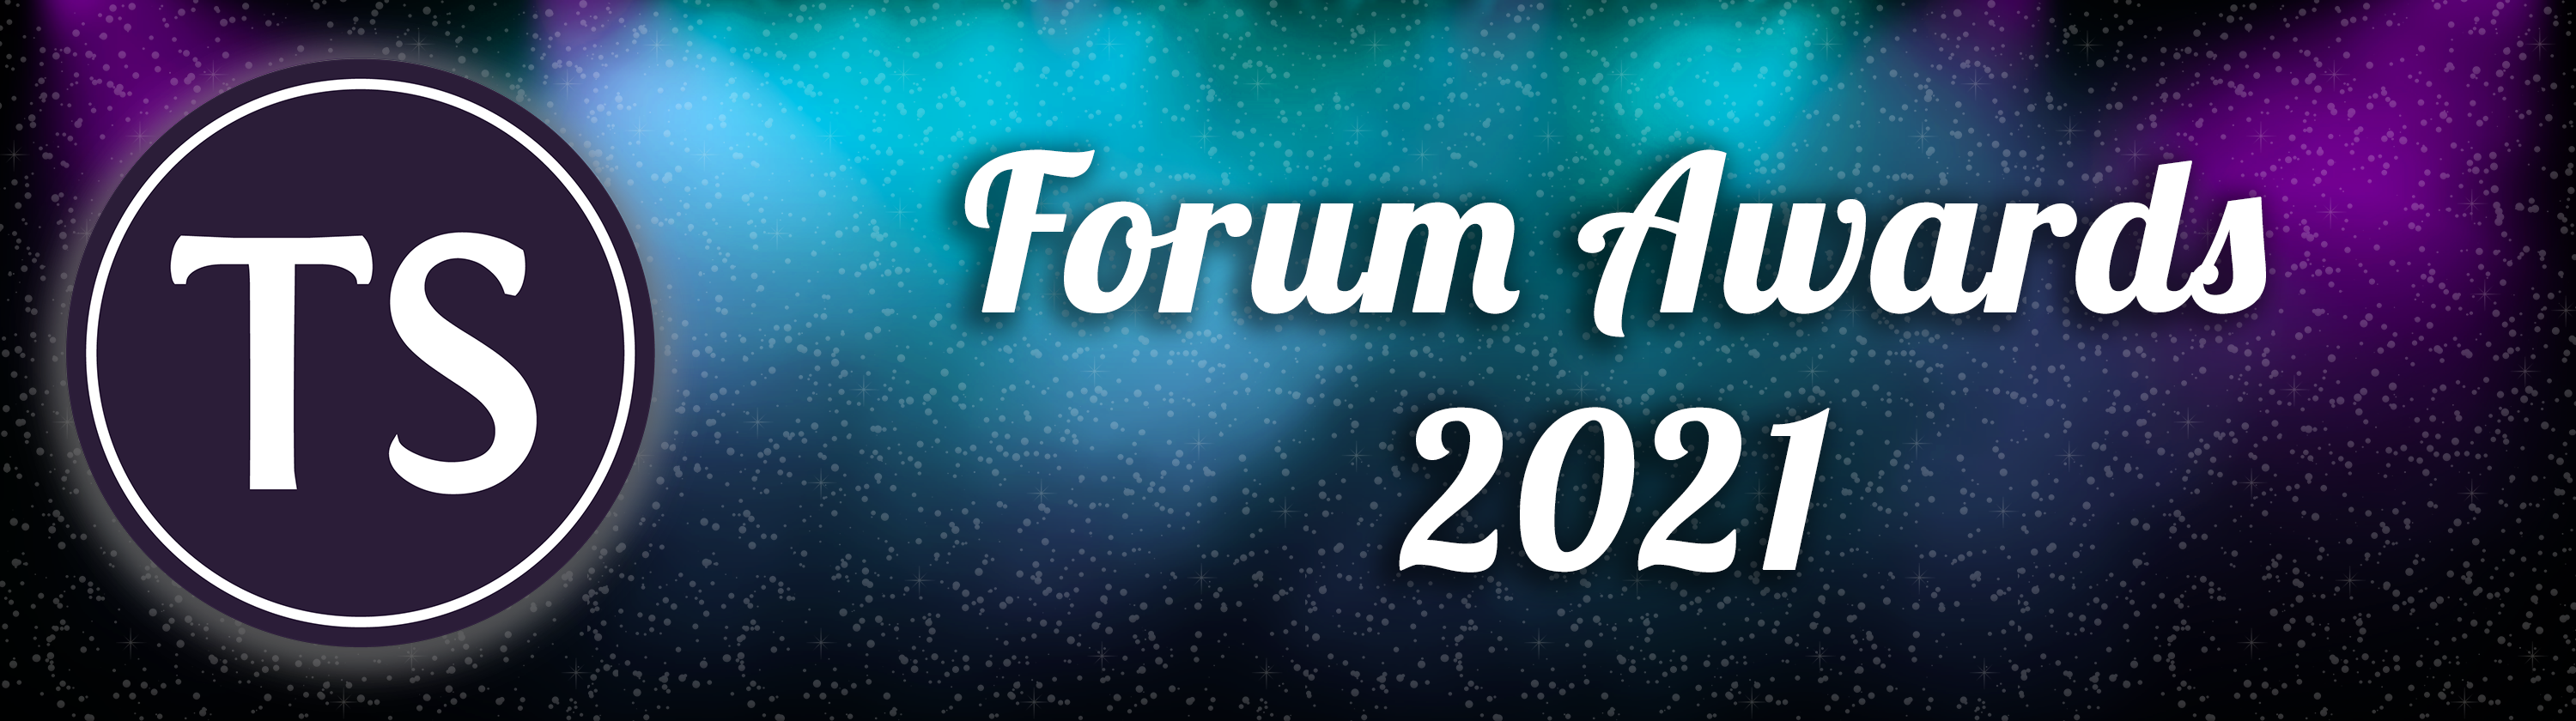 Forum-Awards-21.png